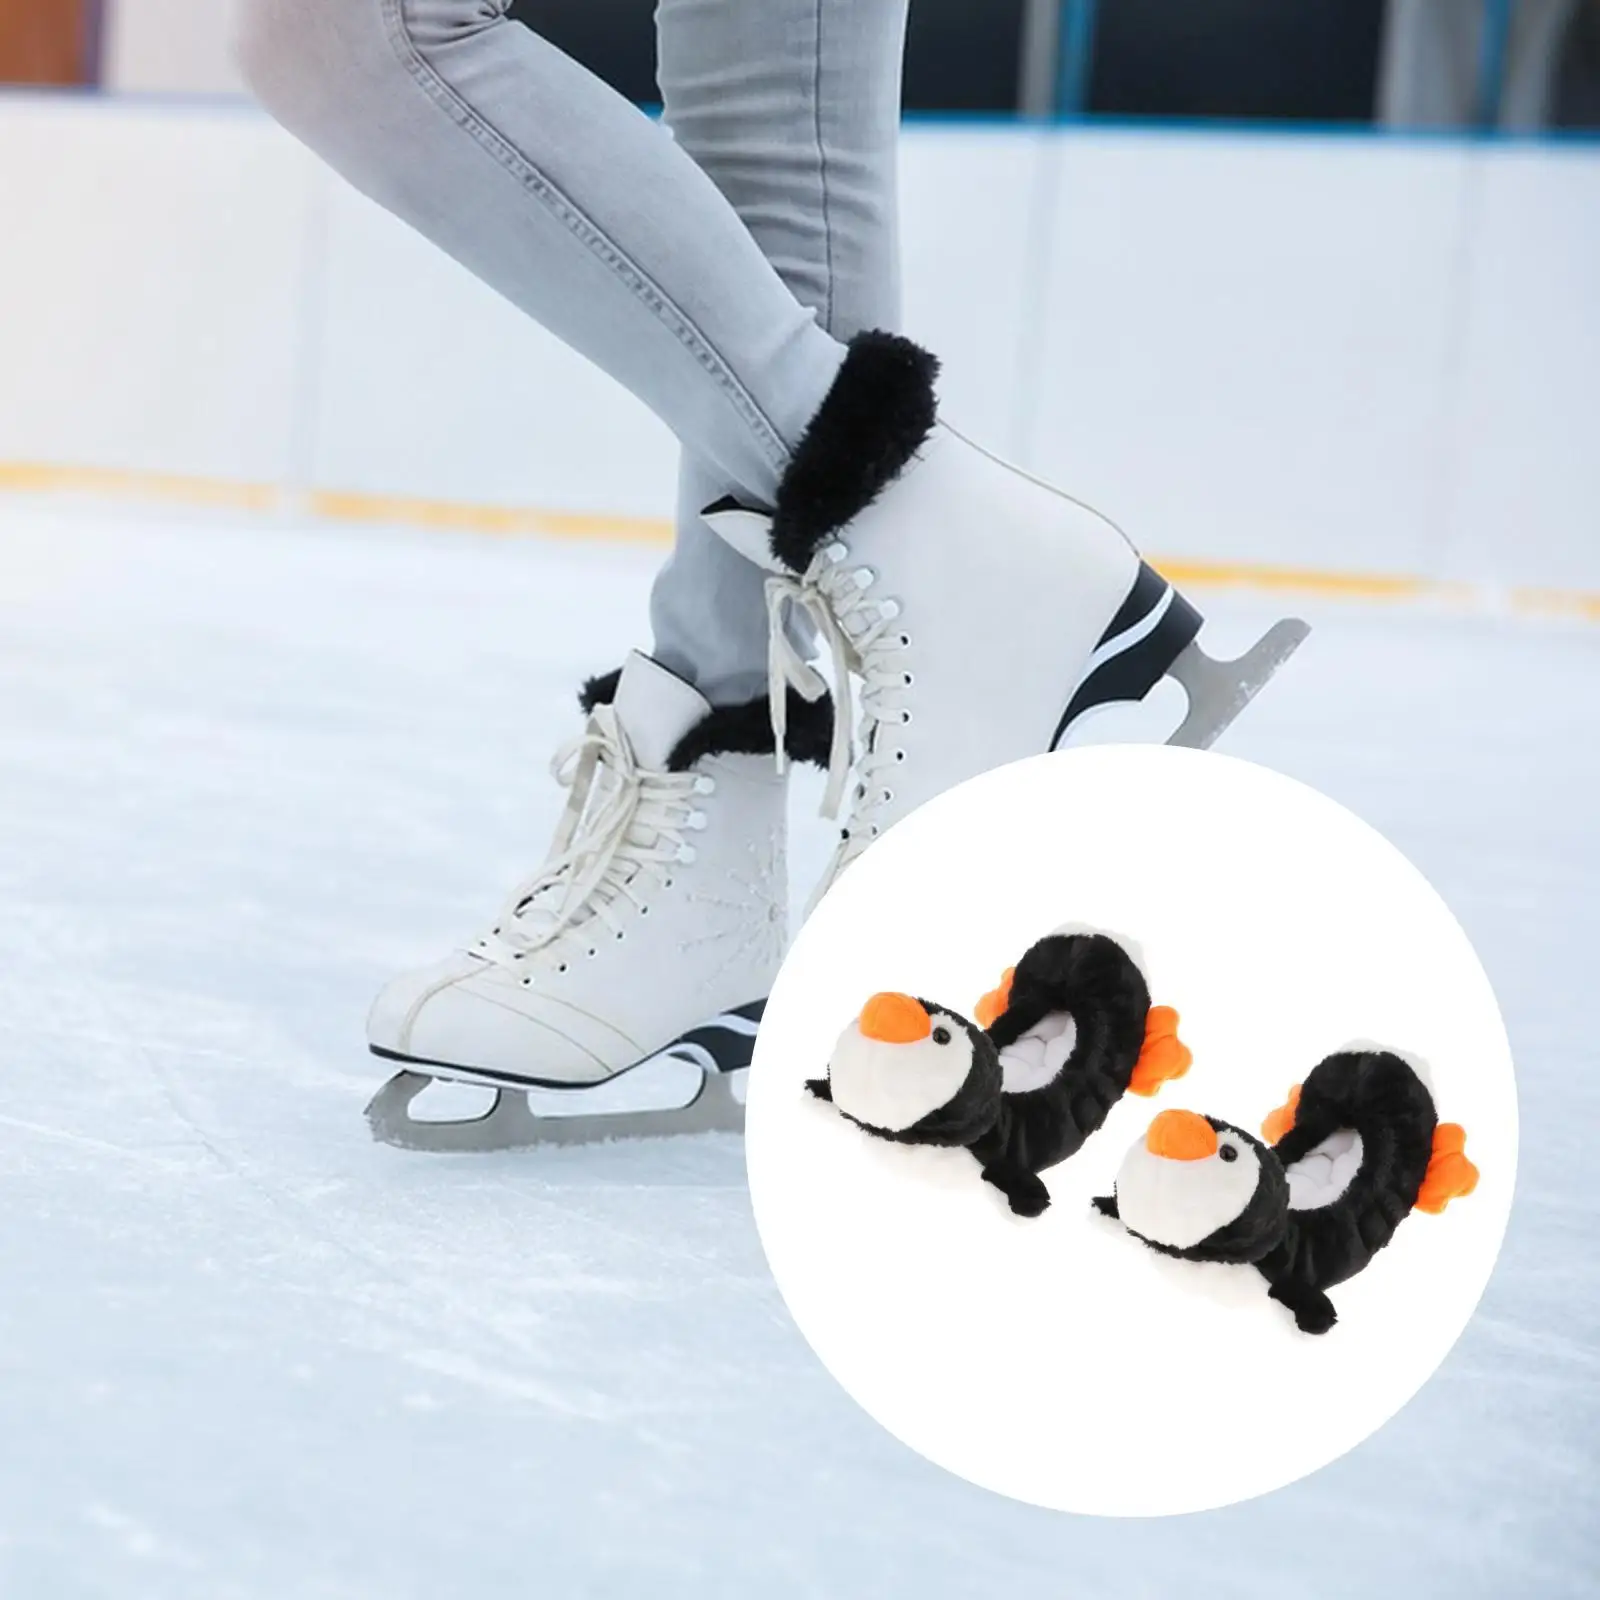 Ice Skate Blade Covers Protect Sleeve Soft Plush Durable Skating Cover for Ice Skates Men Women Hockey Skates Equipment